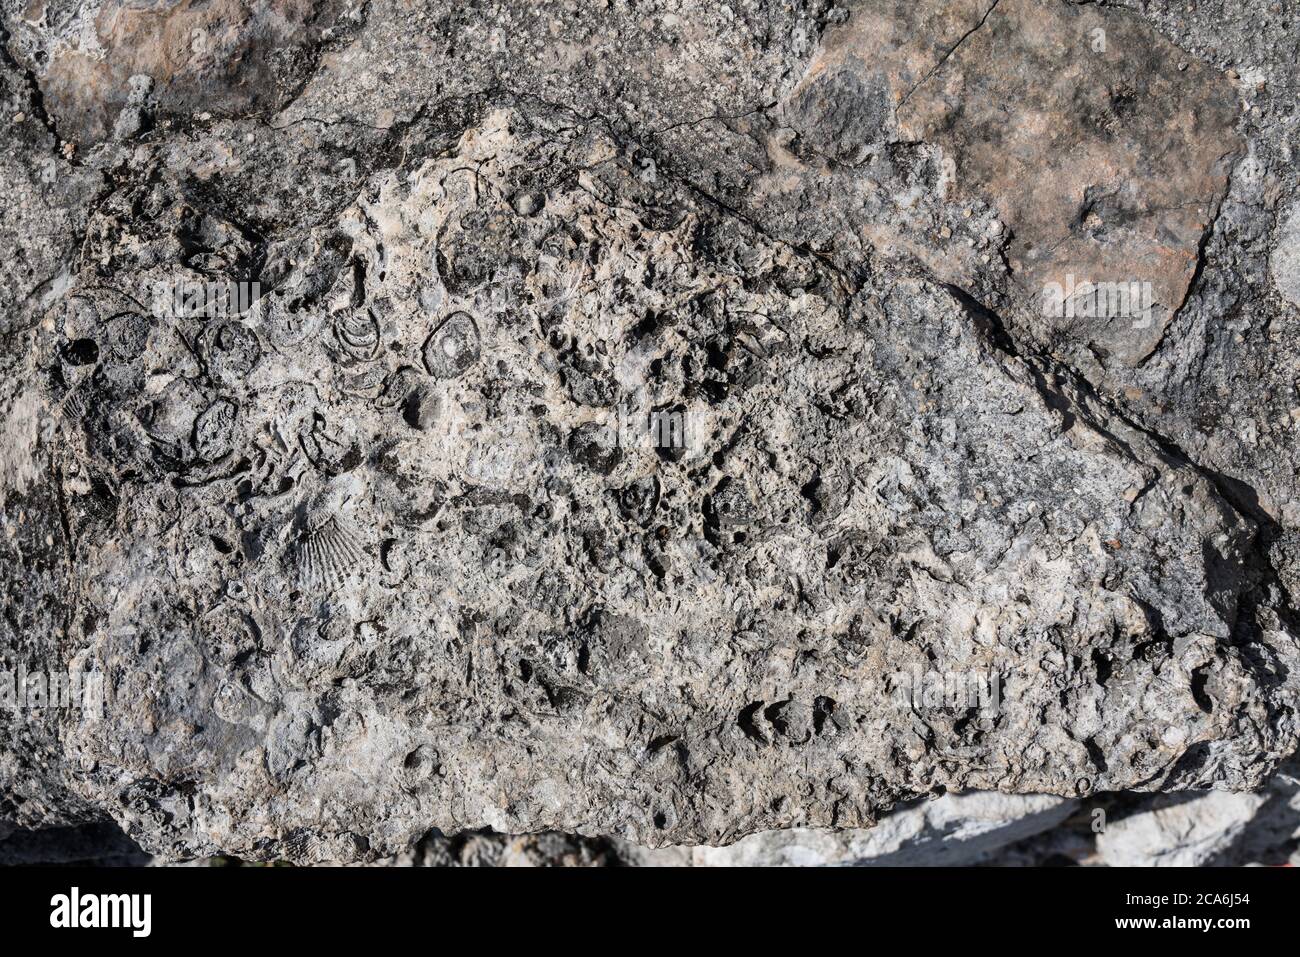 Seahells y fósiles marinos en la piedra caliza utilizada para construir la ciudad maya postclásica de Mayapan, Yucatán, México. Foto de stock